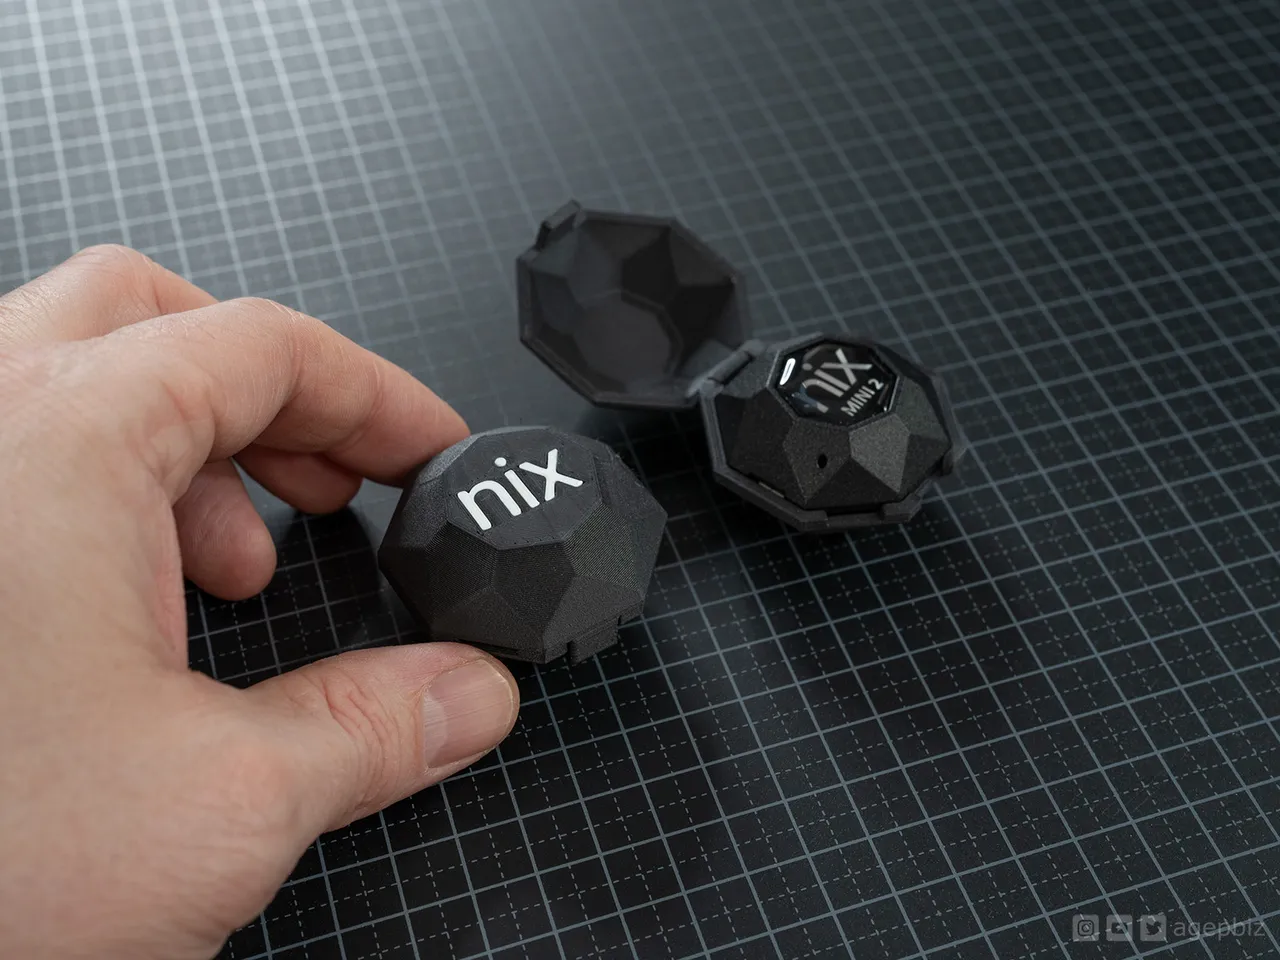 Nix Color Sensor Mini 2